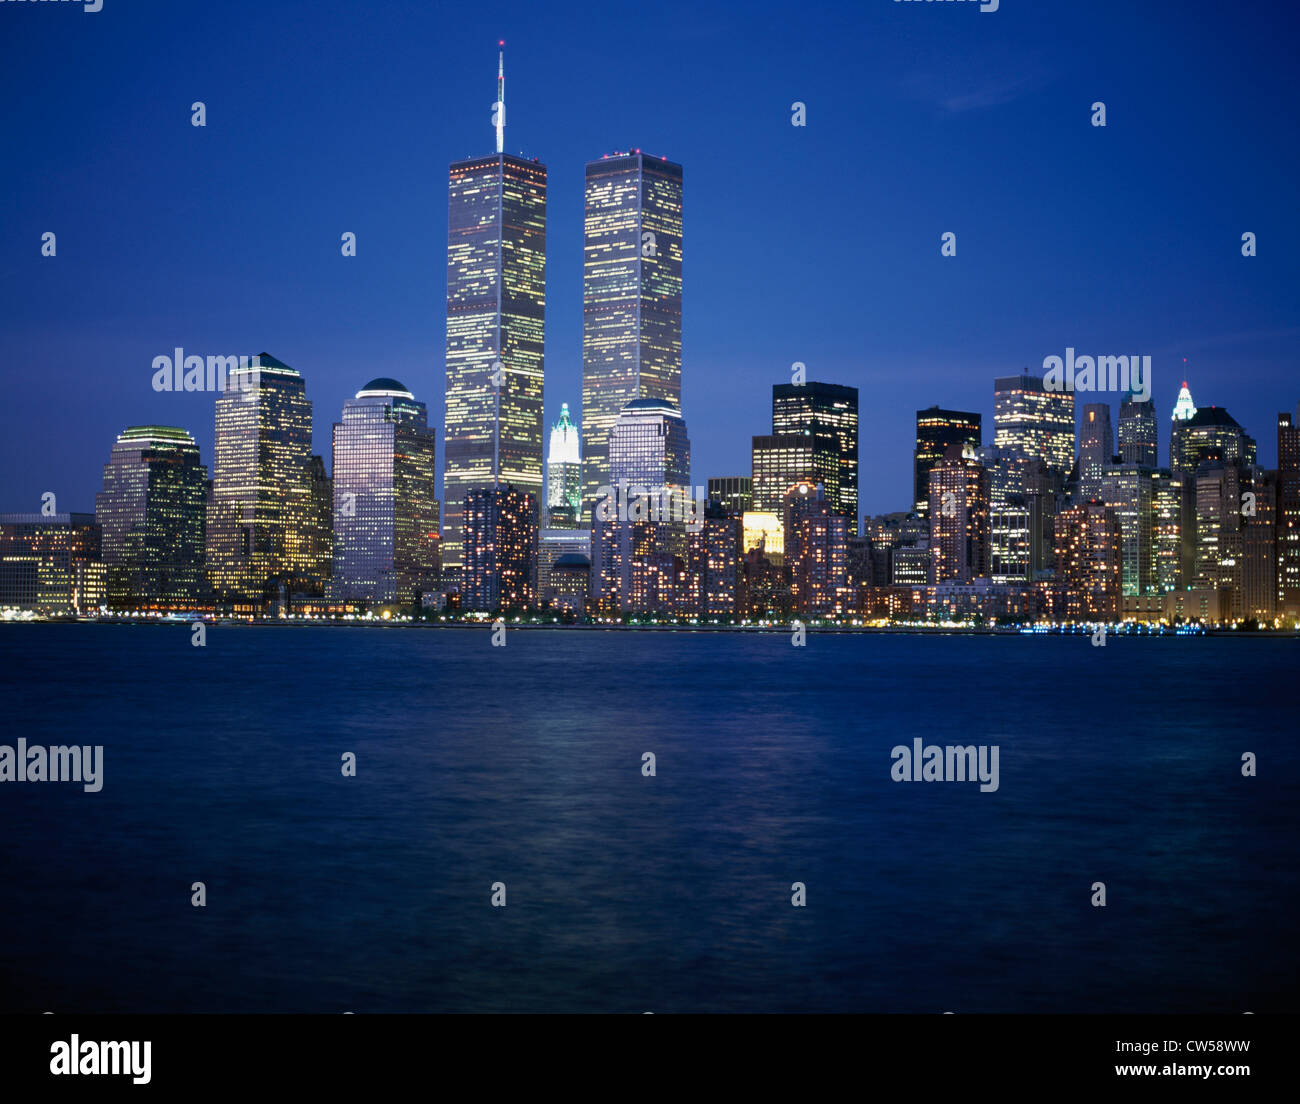 Grattacieli sul lungomare illuminato di notte, World Trade Center, Manhattan, New York, New York, Stati Uniti d'America Foto Stock